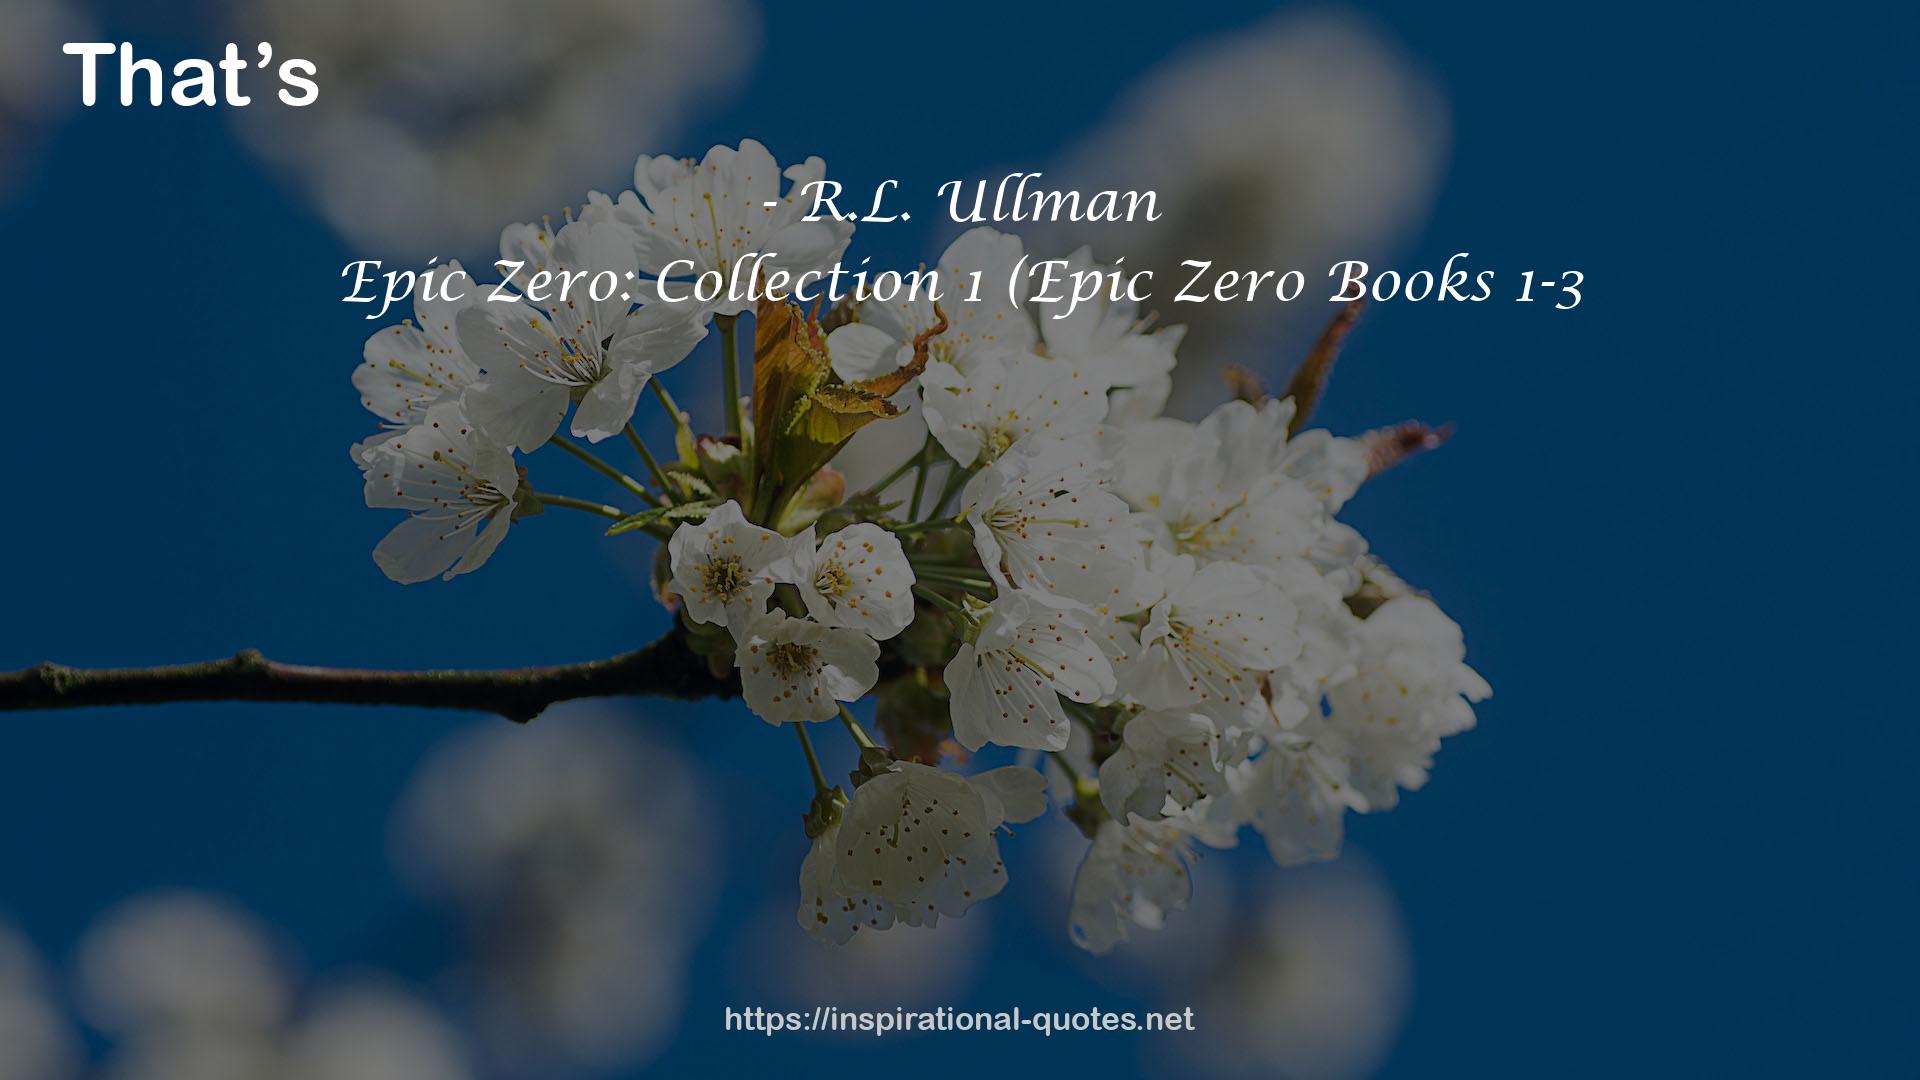 Epic Zero: Collection 1 (Epic Zero Books 1-3 QUOTES